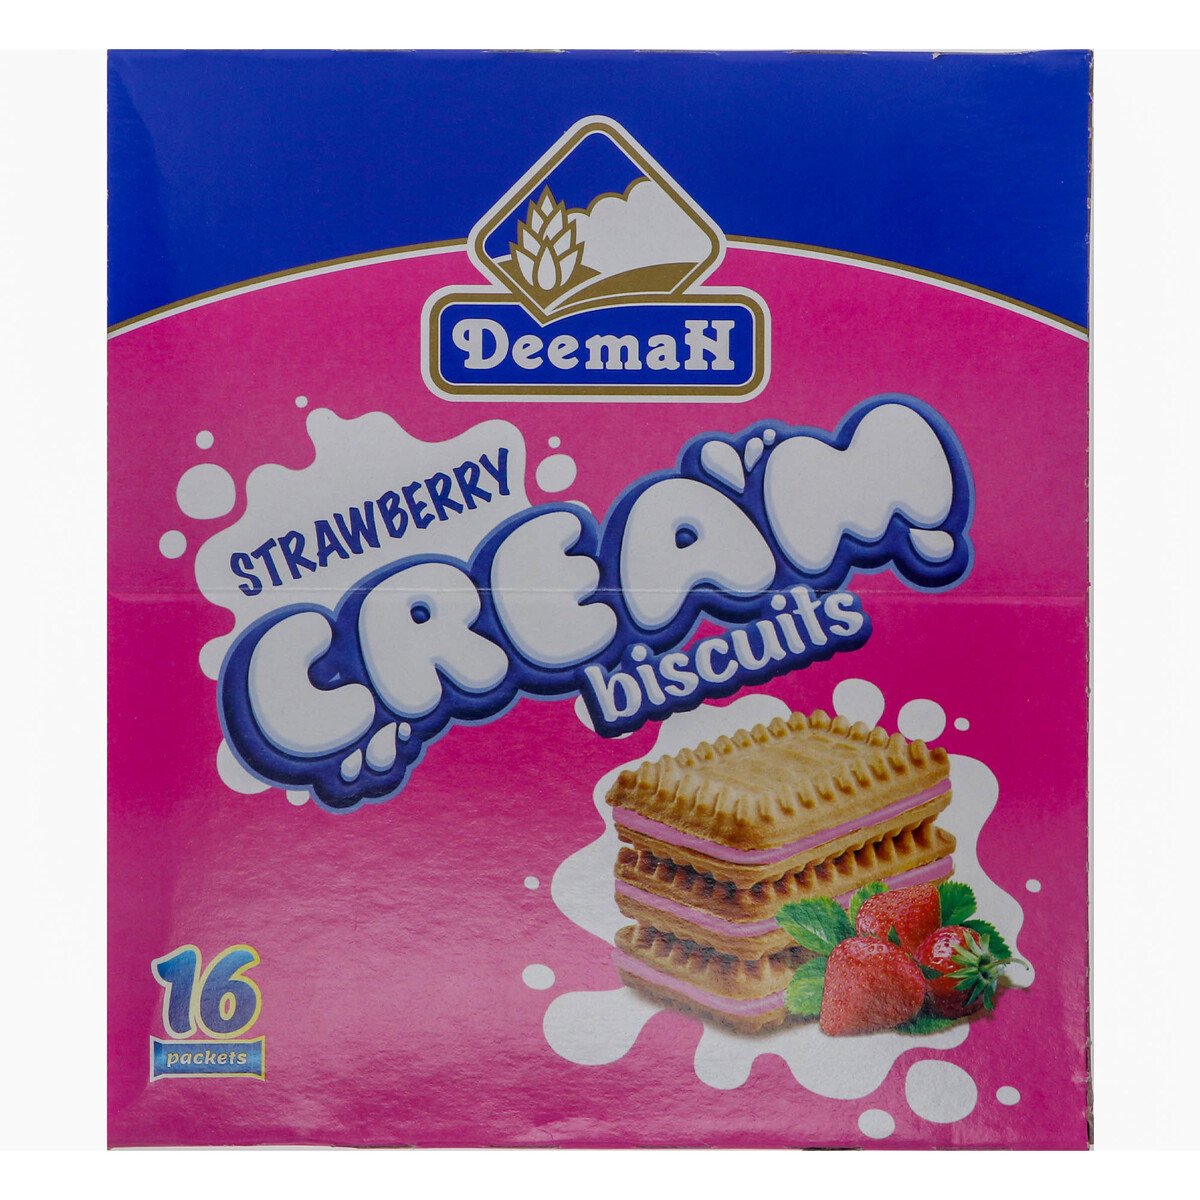 Deemah Strawberry Cream Biscuits 16 x 27g